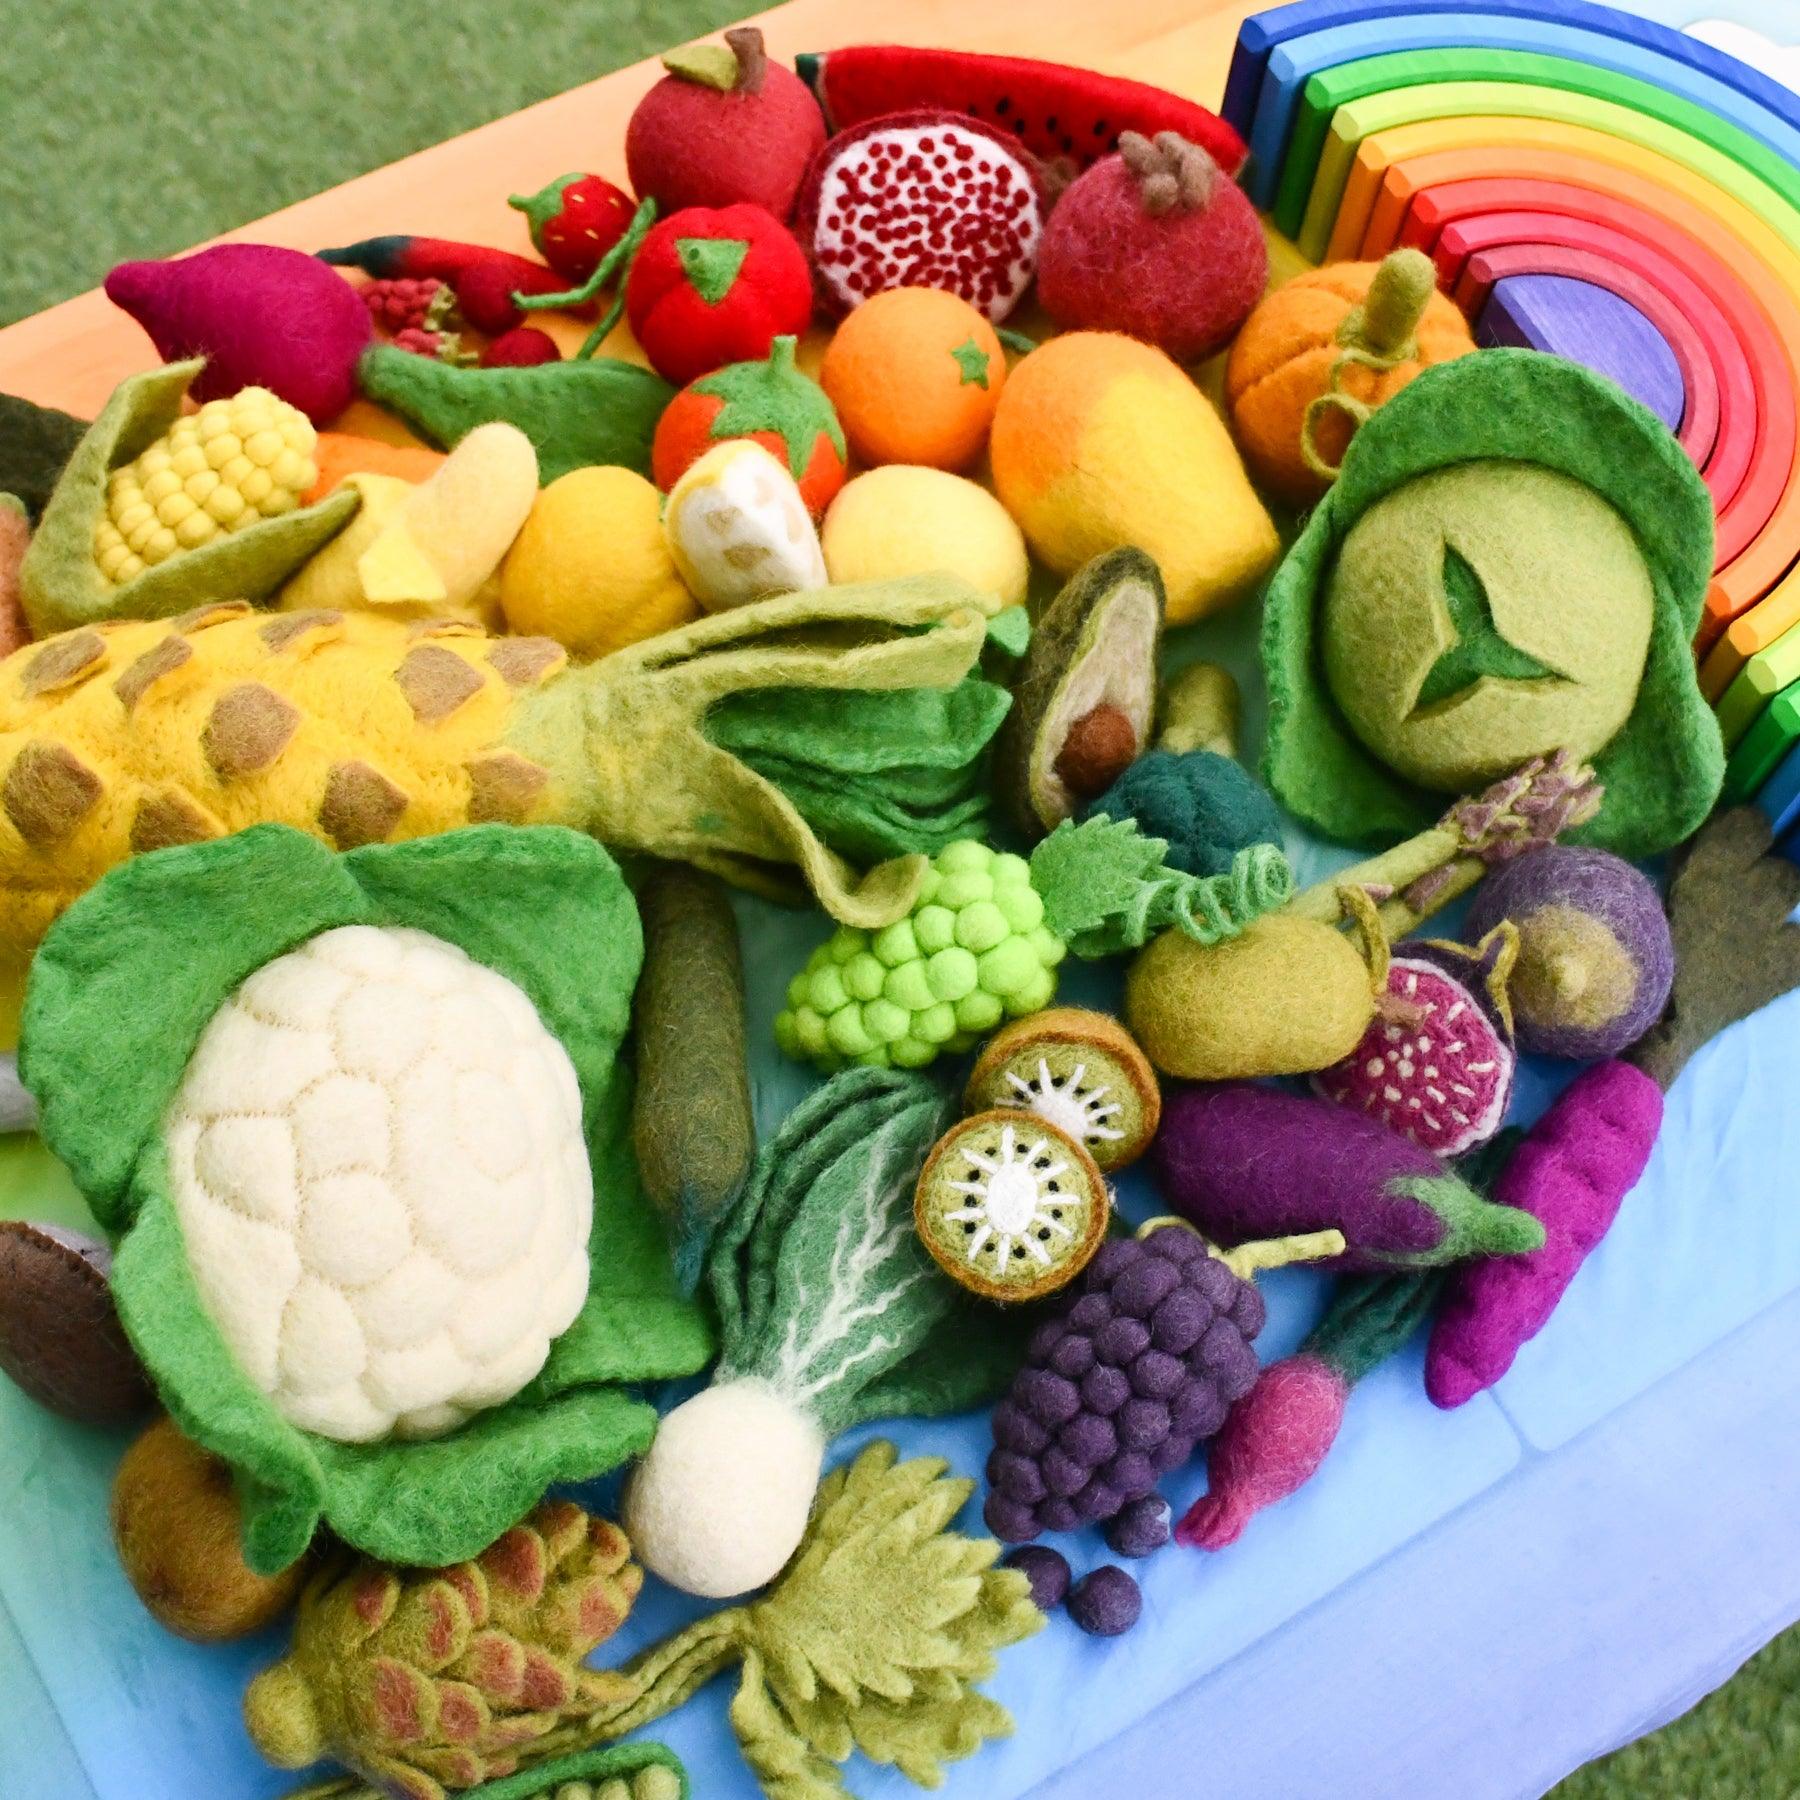 Felt Vegetables and Fruits Set B - 11 pieces - Tara Treasures